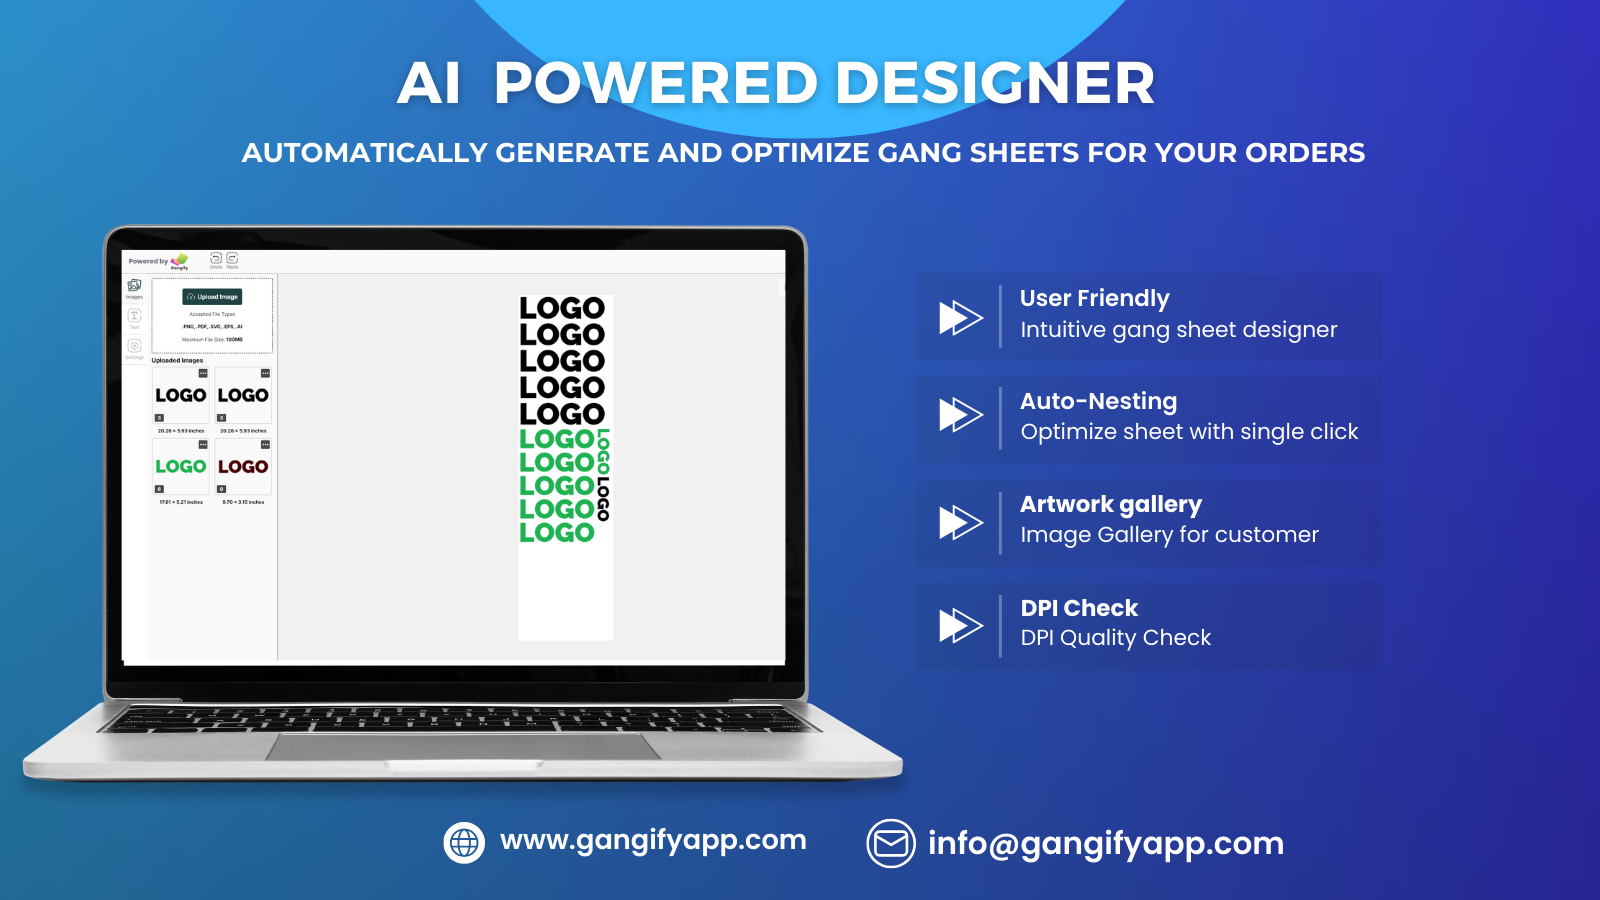 Smart Gang sheet designer